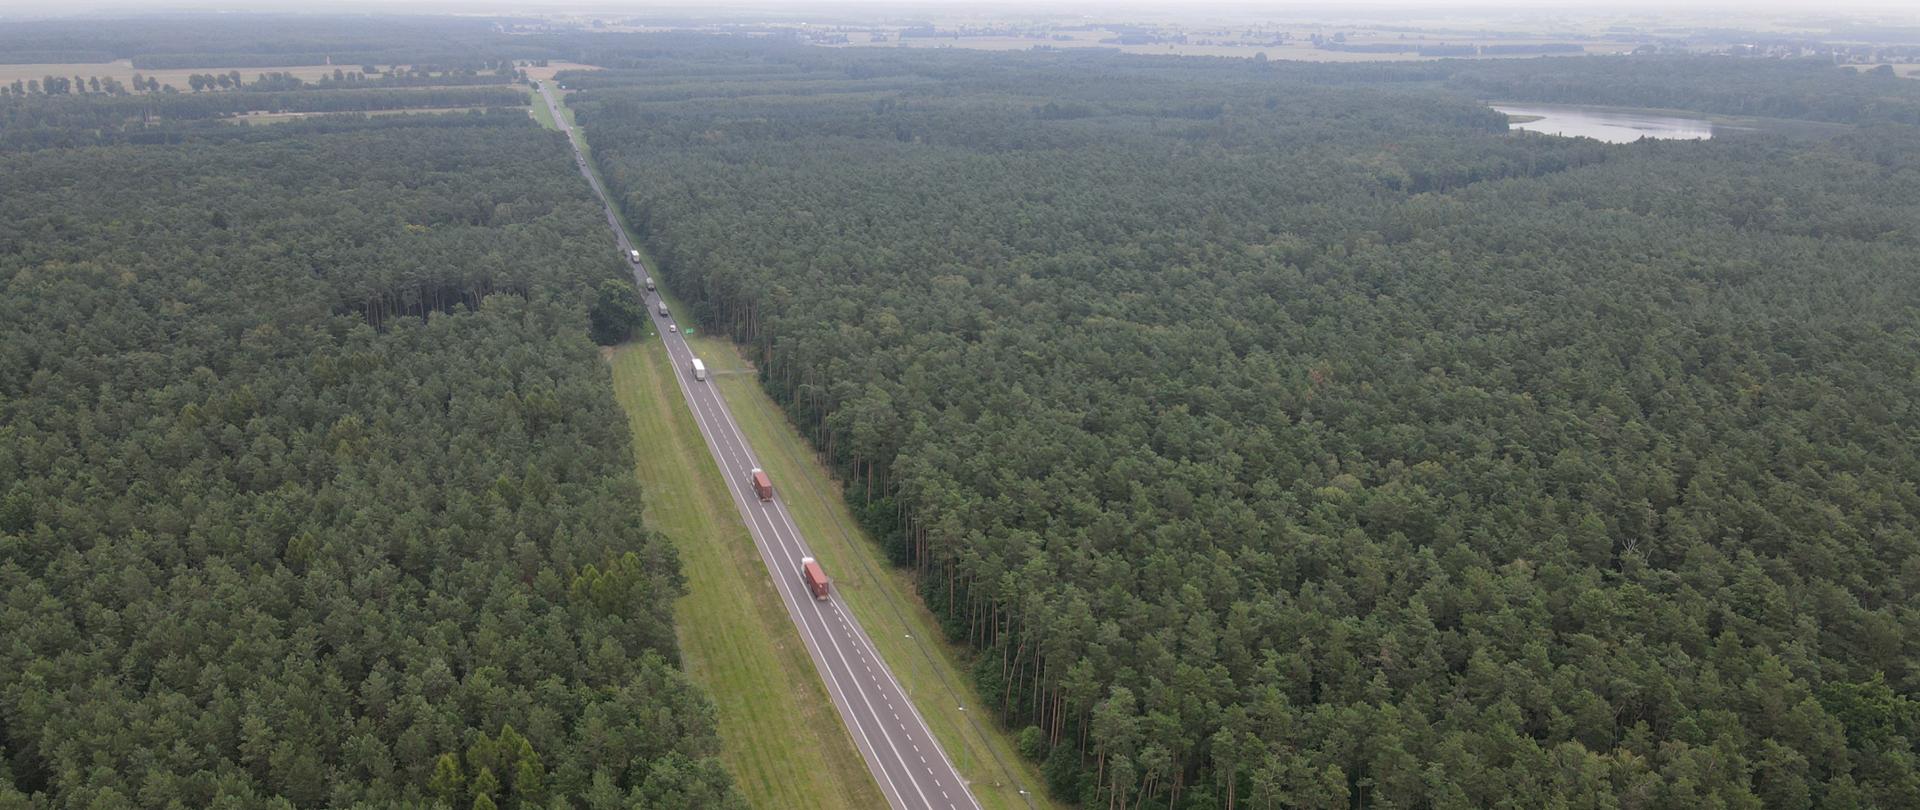 Przyszła S19 Kock - Radzyń Podlaski. Na zdjęciu widać drogę biegnącą przez las. Zdjęcie z poziomu drona.